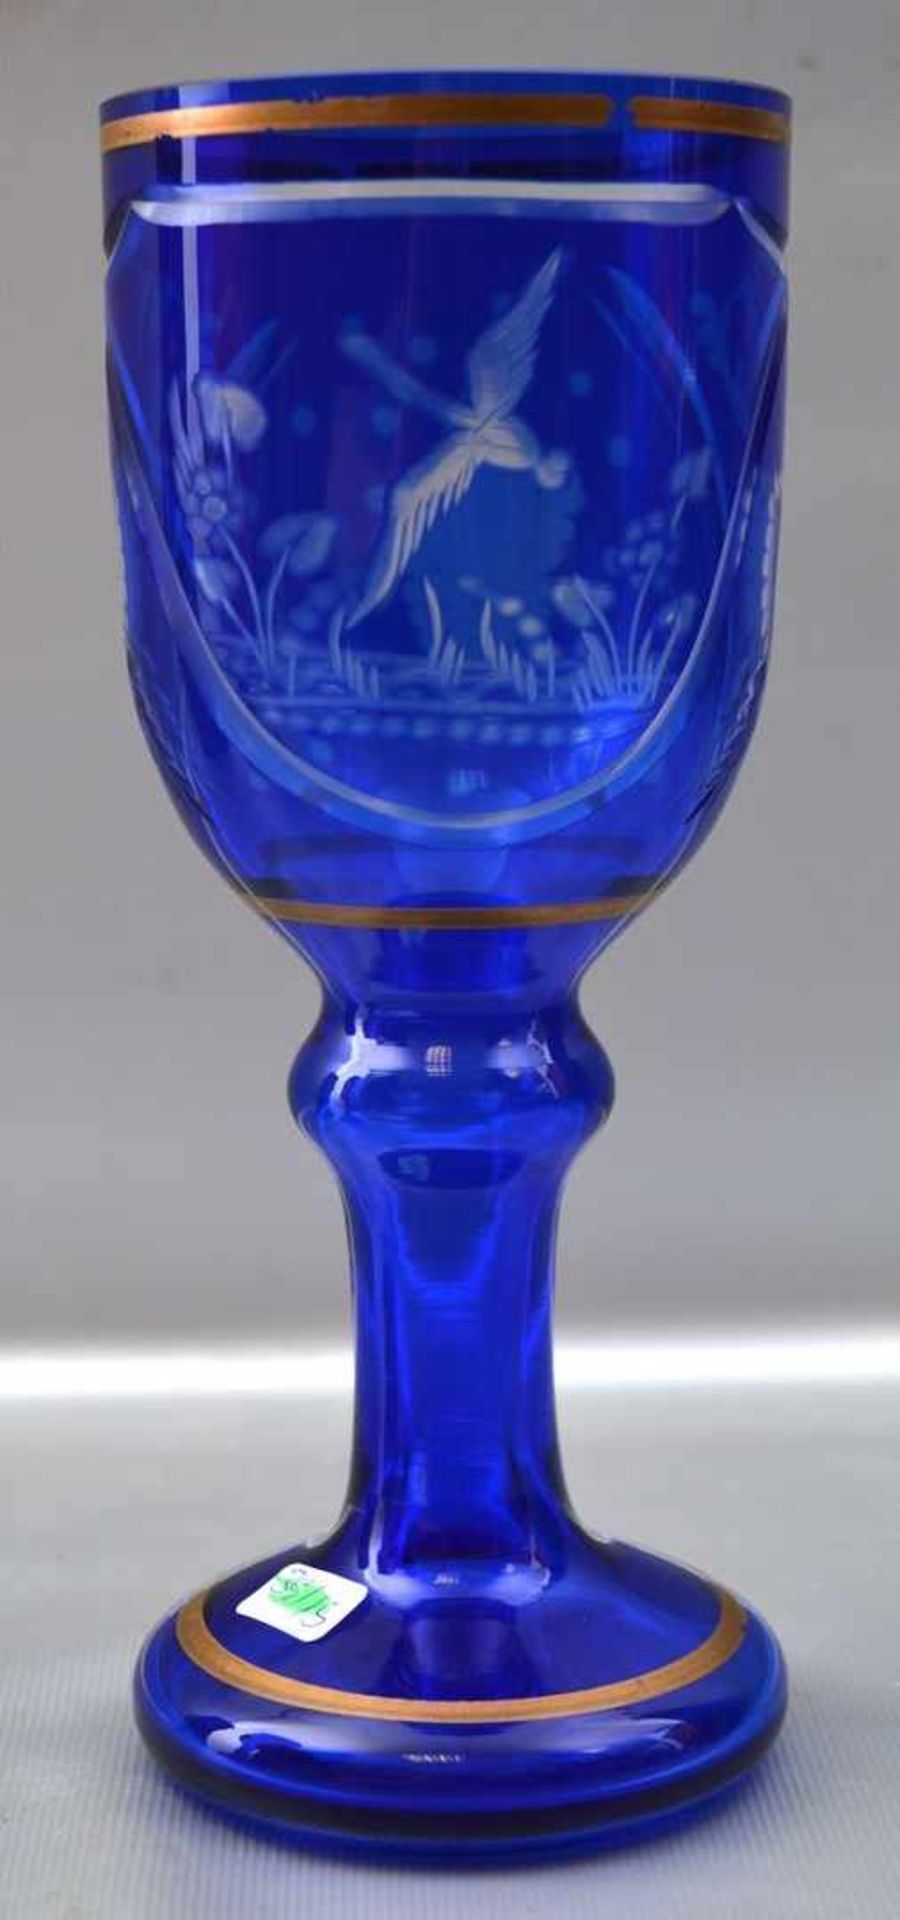 Pokal farbl. Glas, mit blauem Überfang, Kelch geschliffen, H 19 cm